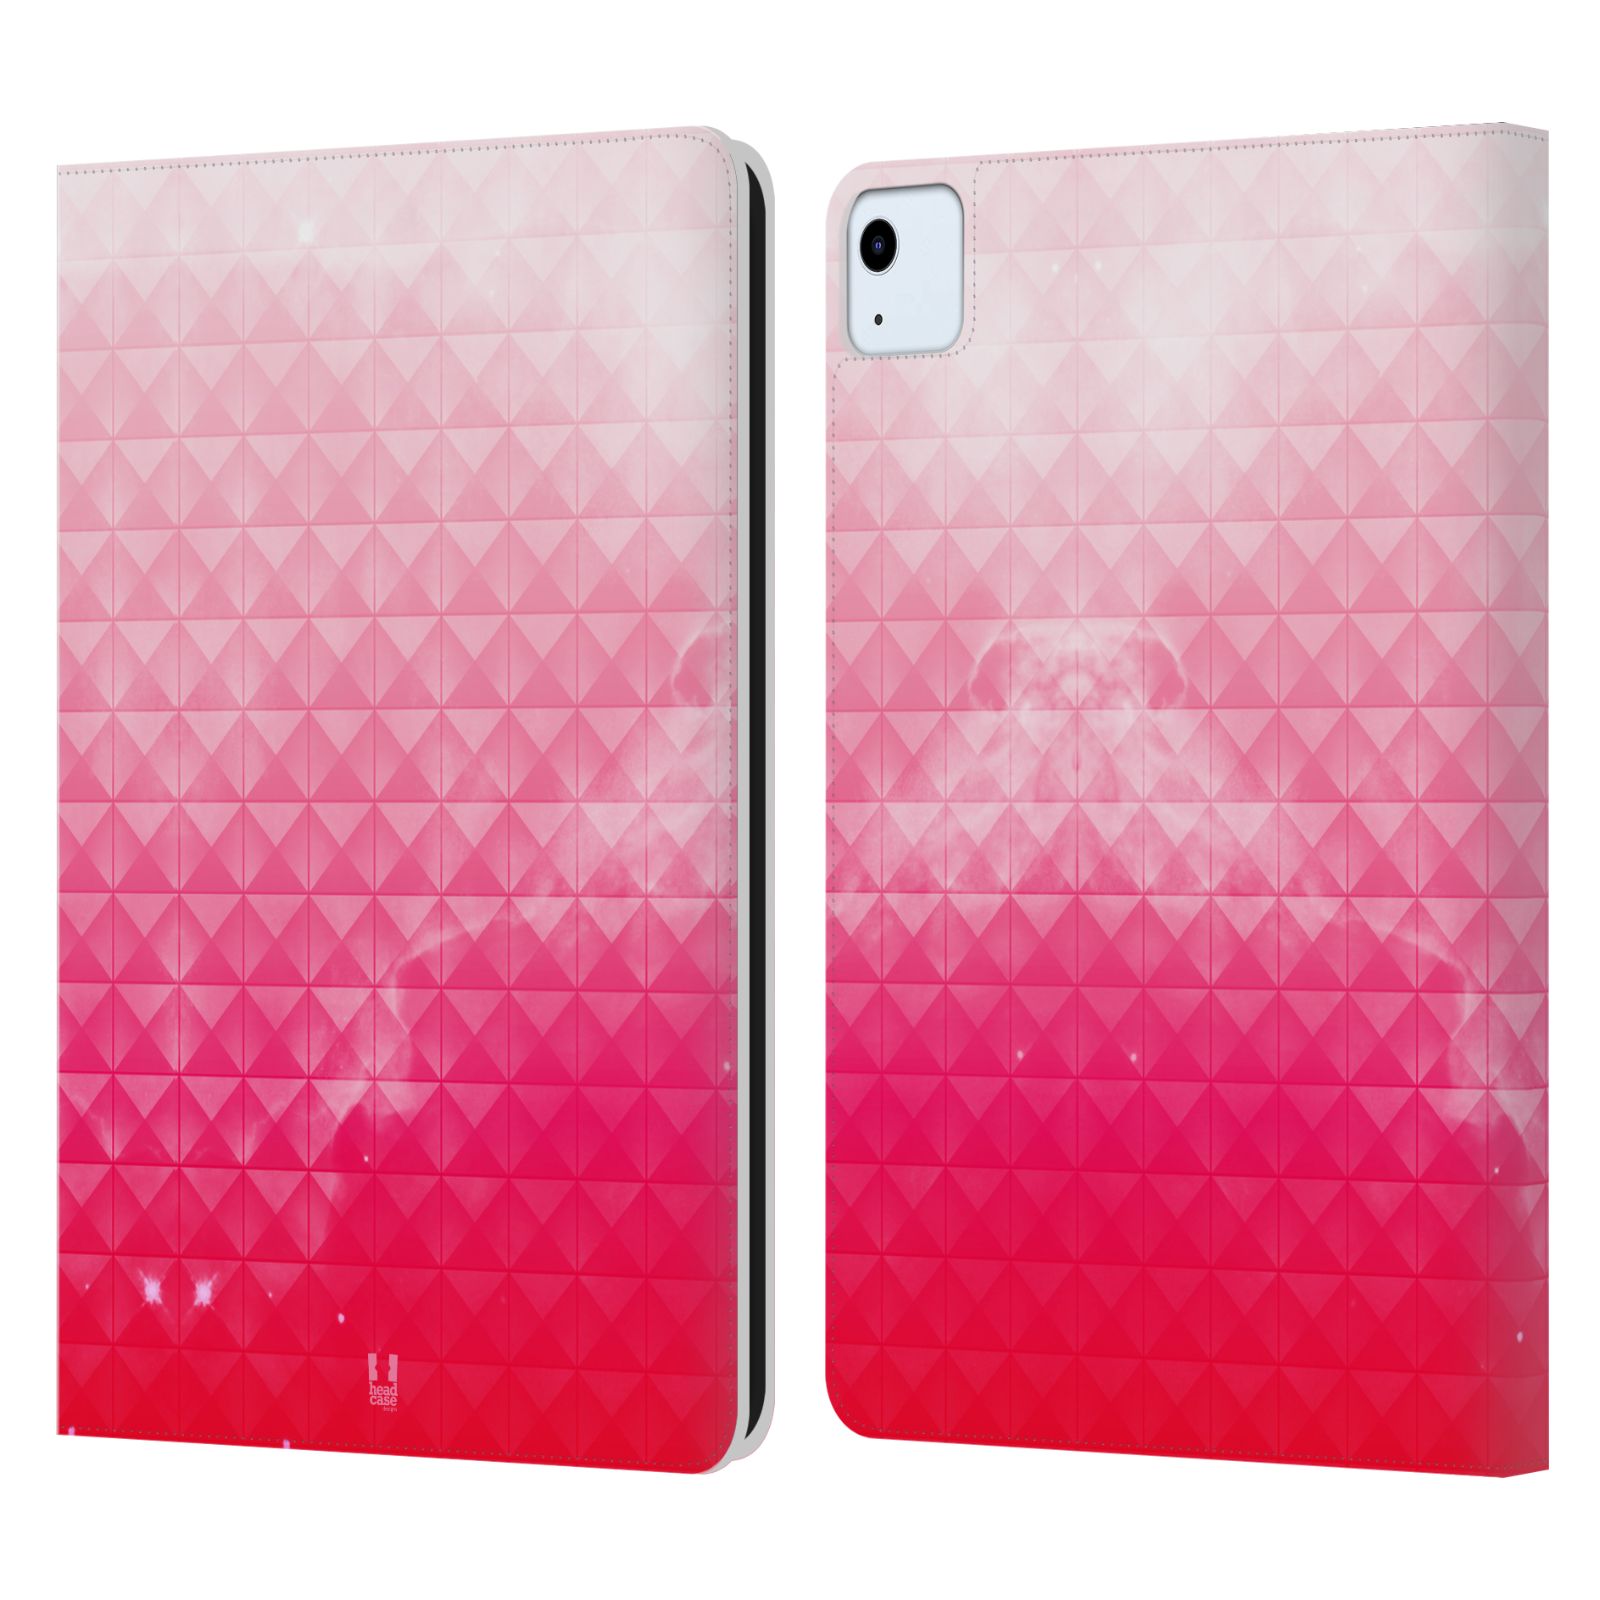 Pouzdro pro tablet Apple Ipad Air 2020 / 2022 - HEAD CASE - barevná vesmírná mlhovina růžová jahoda